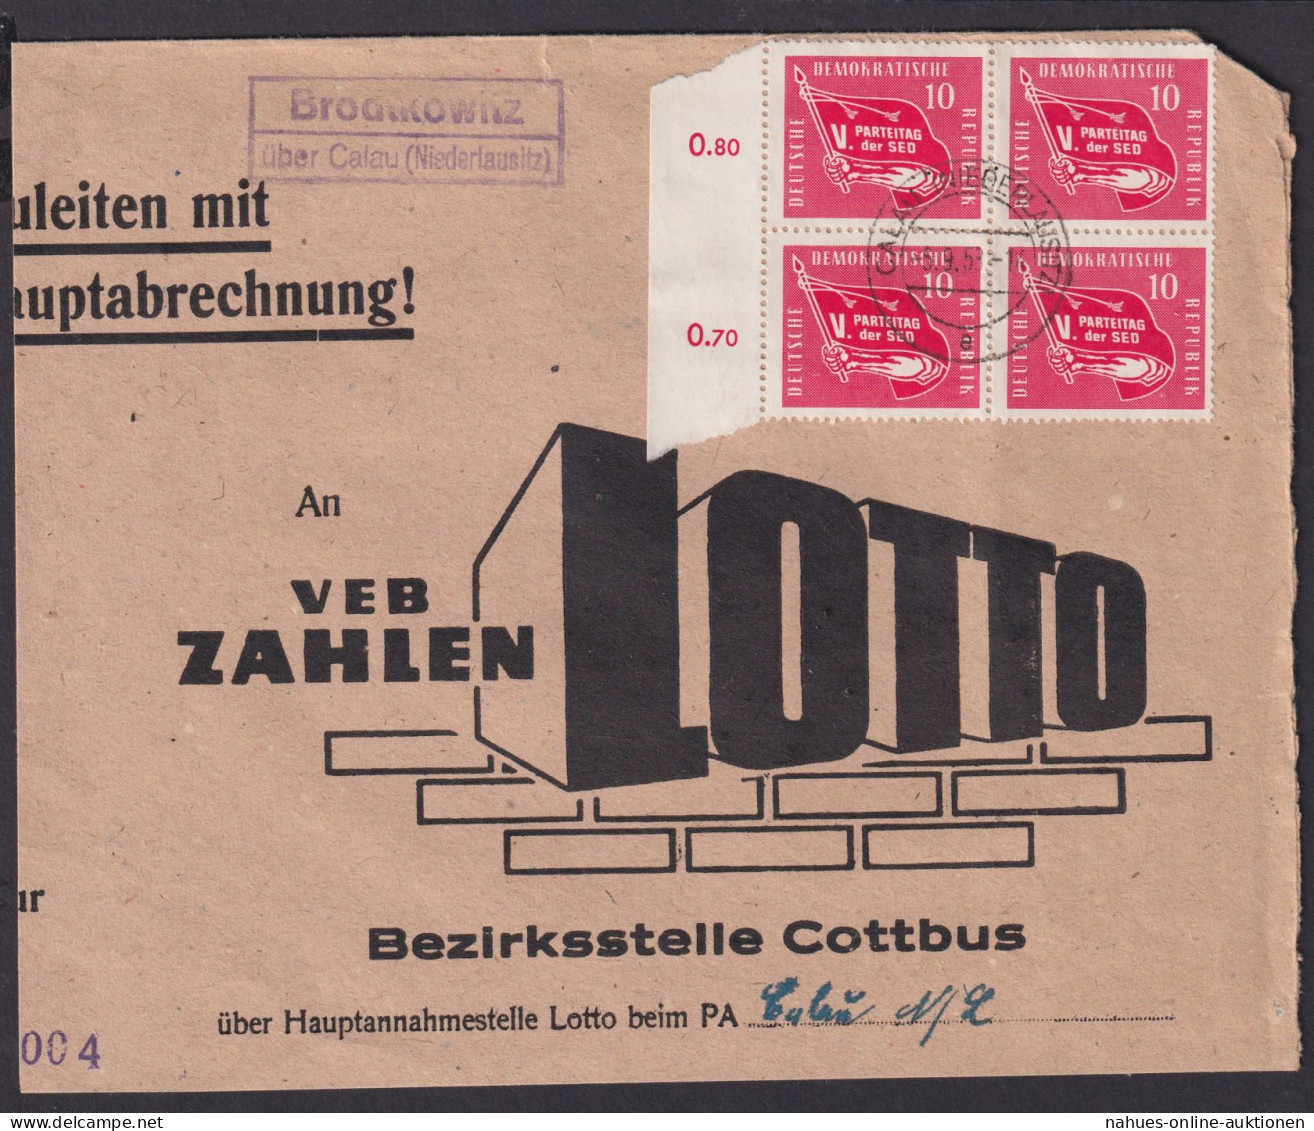 Brodtkowitz über Calau Niederlausitz Brandenburg DDR Brief Landpoststempel - Covers & Documents